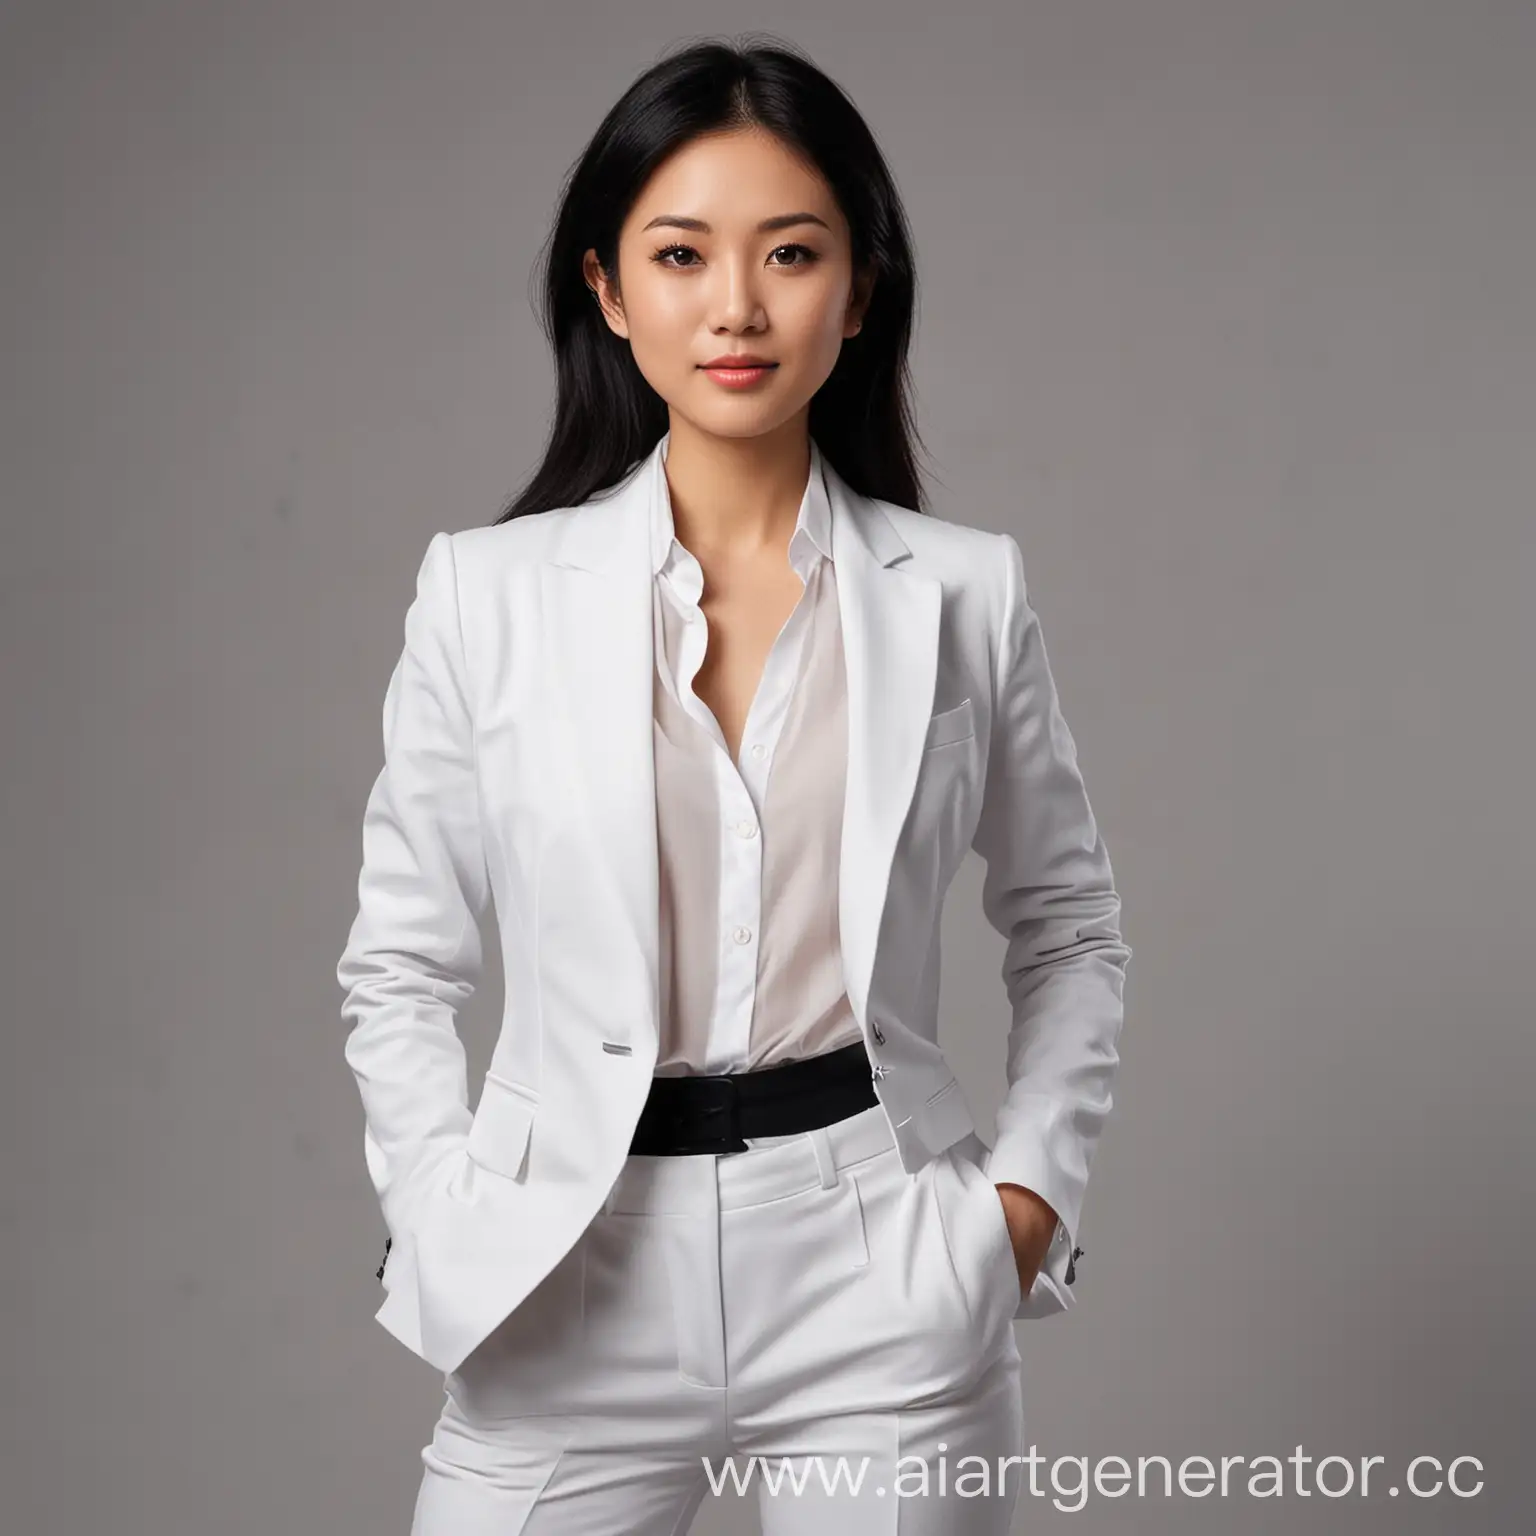 фото девушки, 25-30 лет, в белом костюме, азиатская внешность с темными волосами, деловой стиль